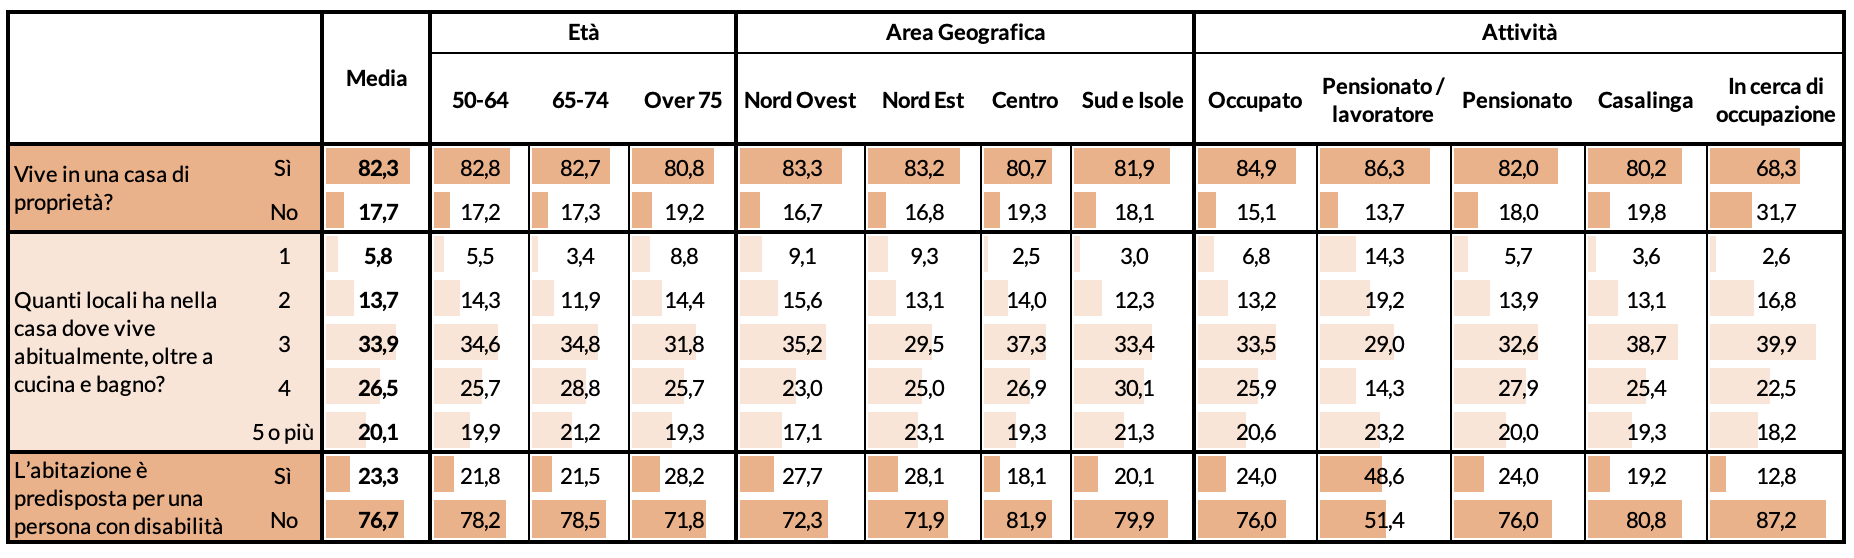 Figura 3 – Tipologia di abitazione, per et, area geografica e attivit svolta (valori in %)